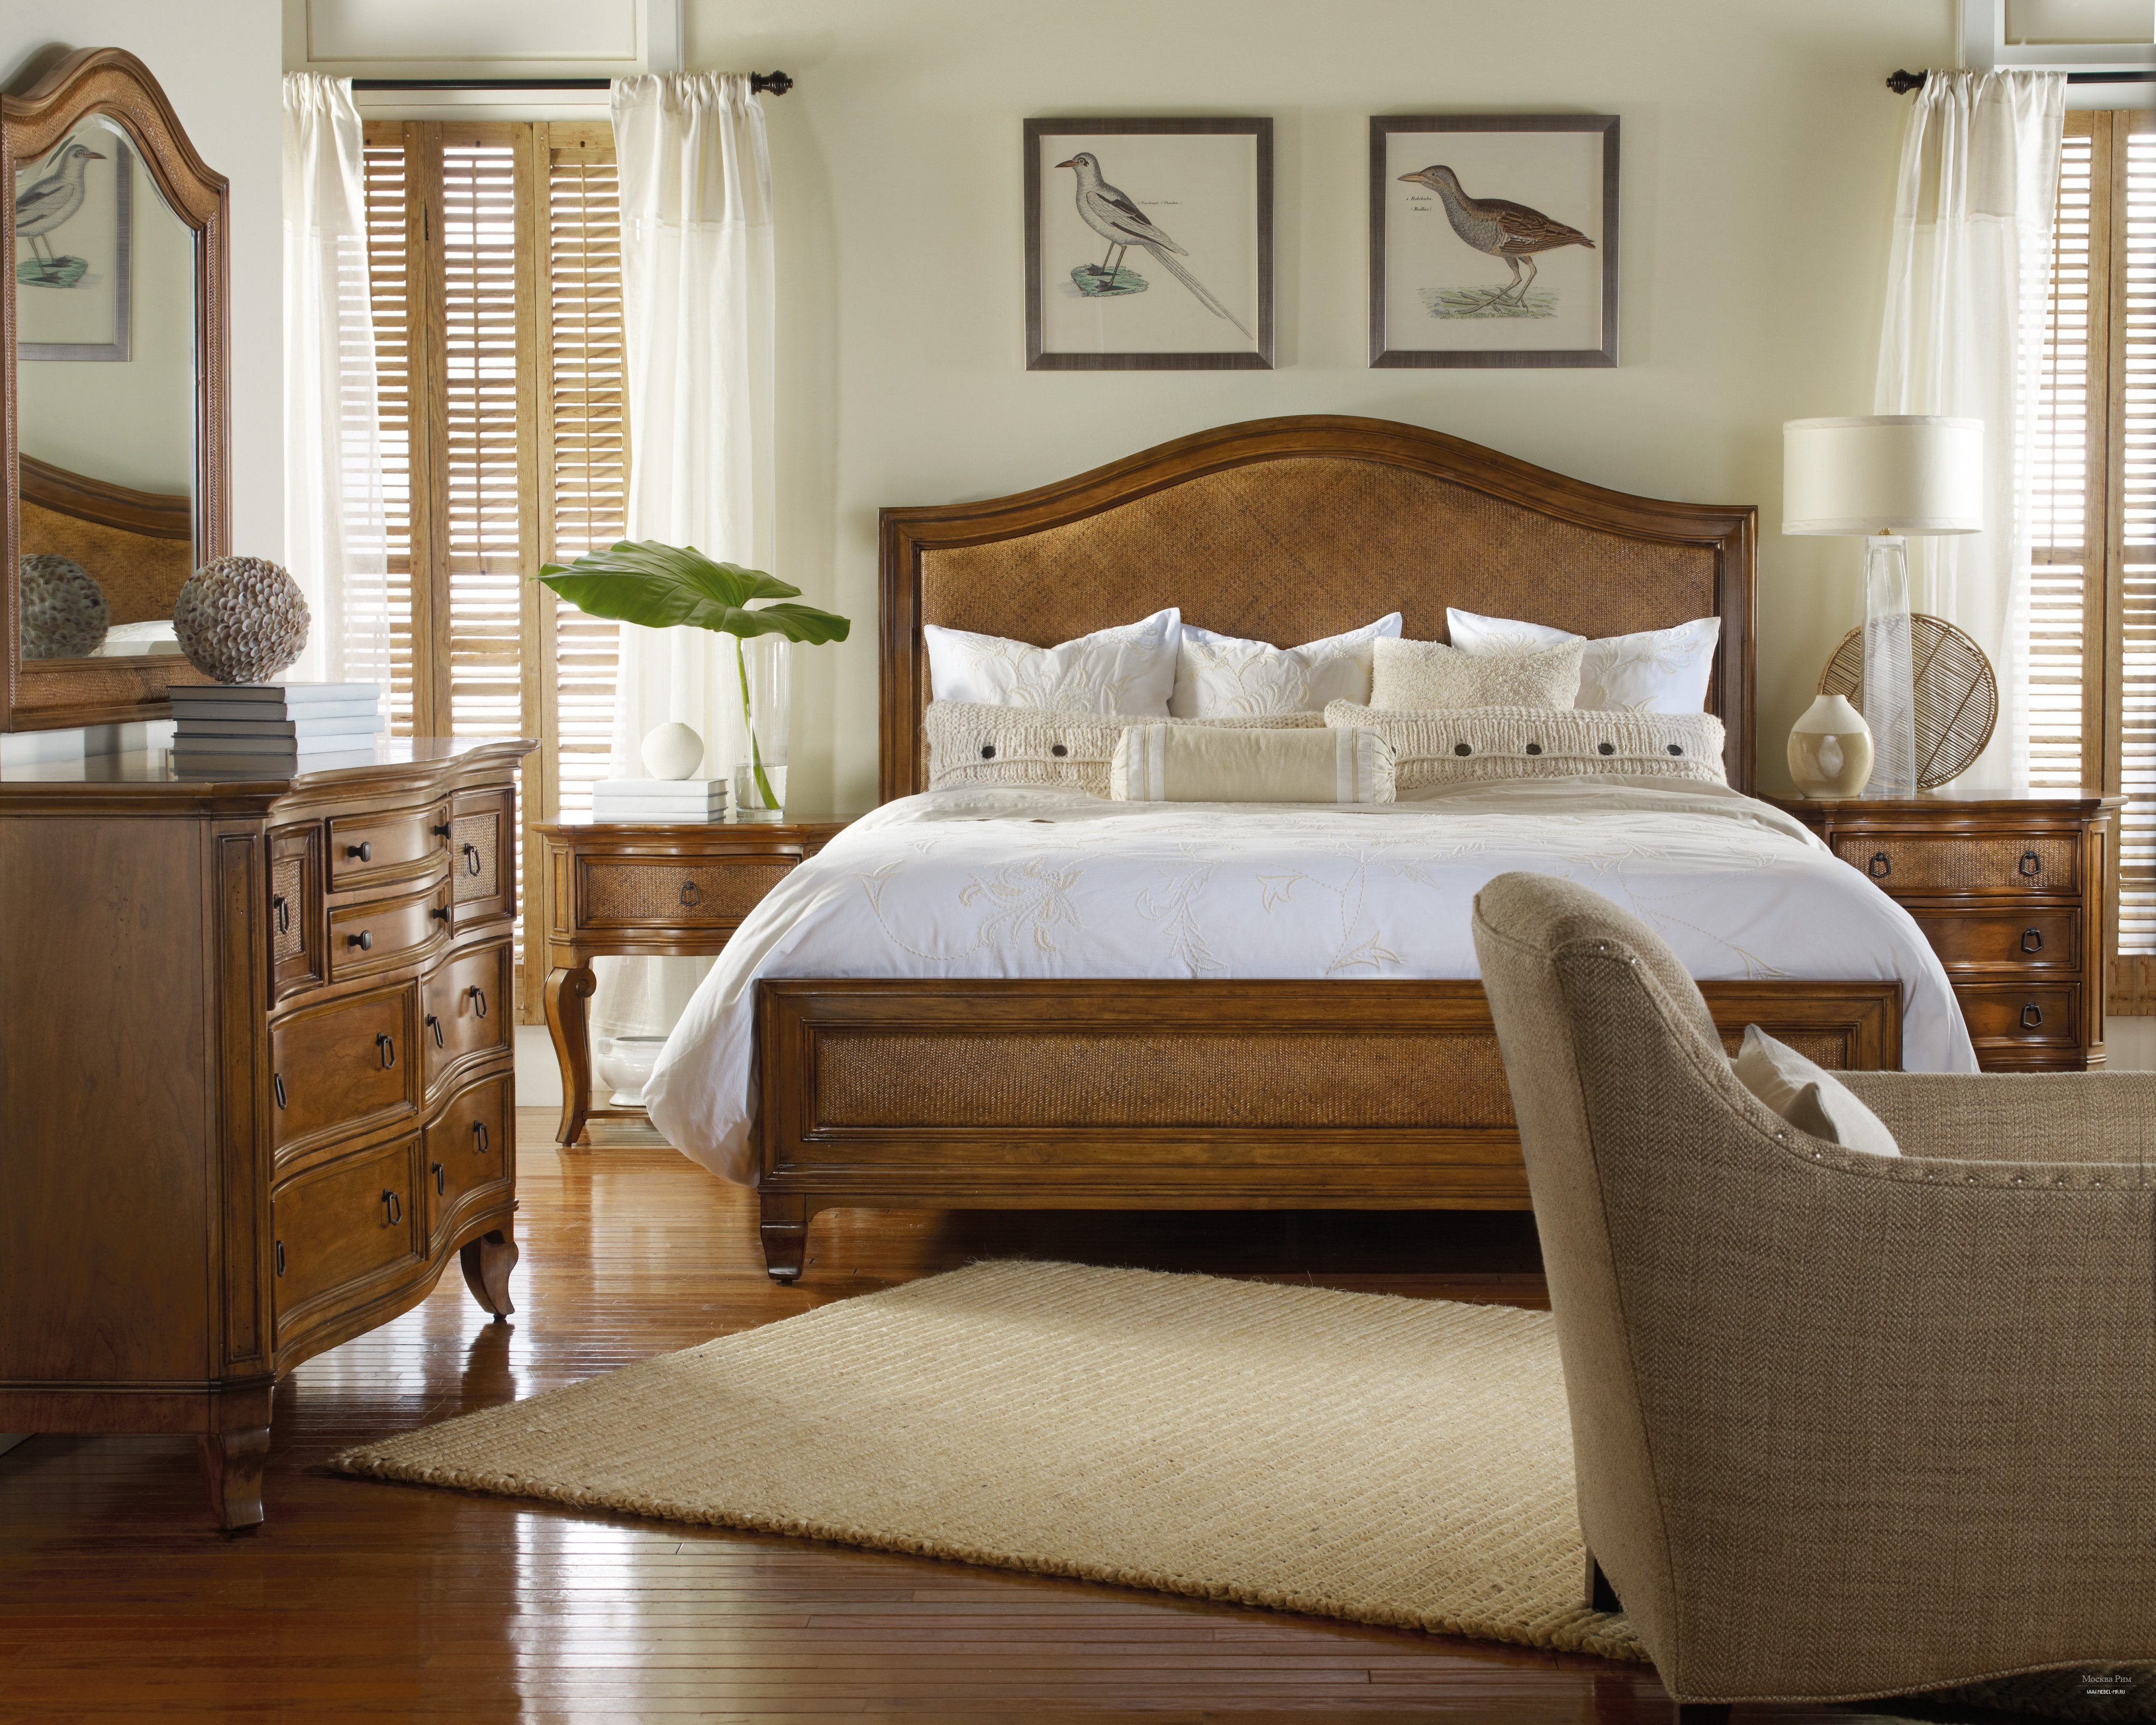 Спальня мебель дерево. Спальня. Интерьер спальни с деревянной мебелью. Комната с деревянной мебелью. Спальня с деревянной кроватью.